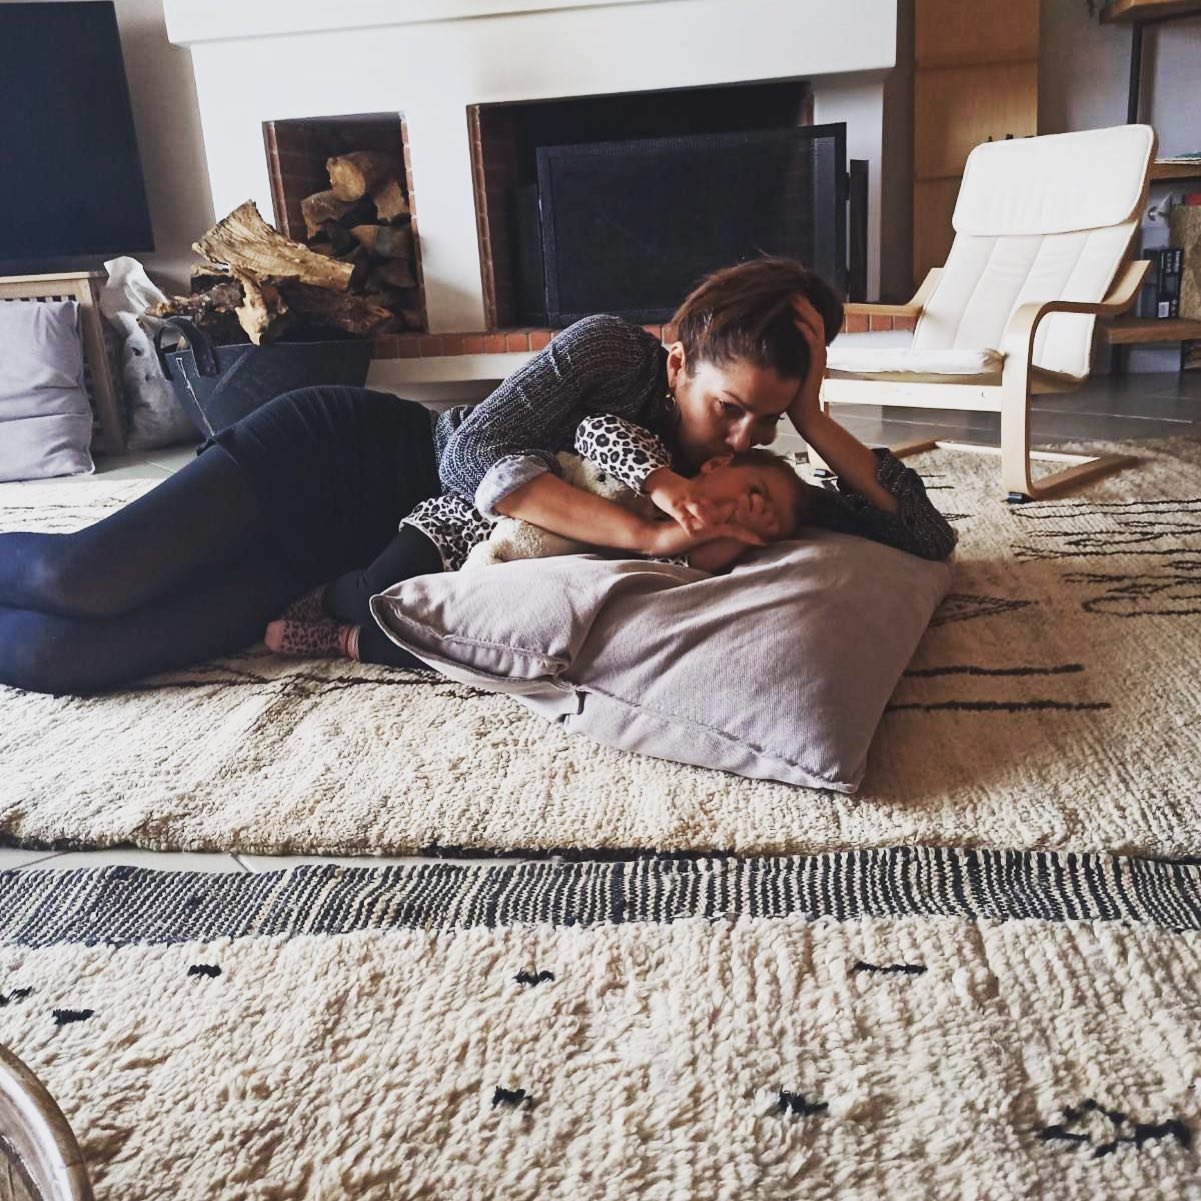 Κλέλια Ρένεση: Δείτε το cozy και στιλάτο σαλόνι του σπιτιού της που μένει με την κορούλα της